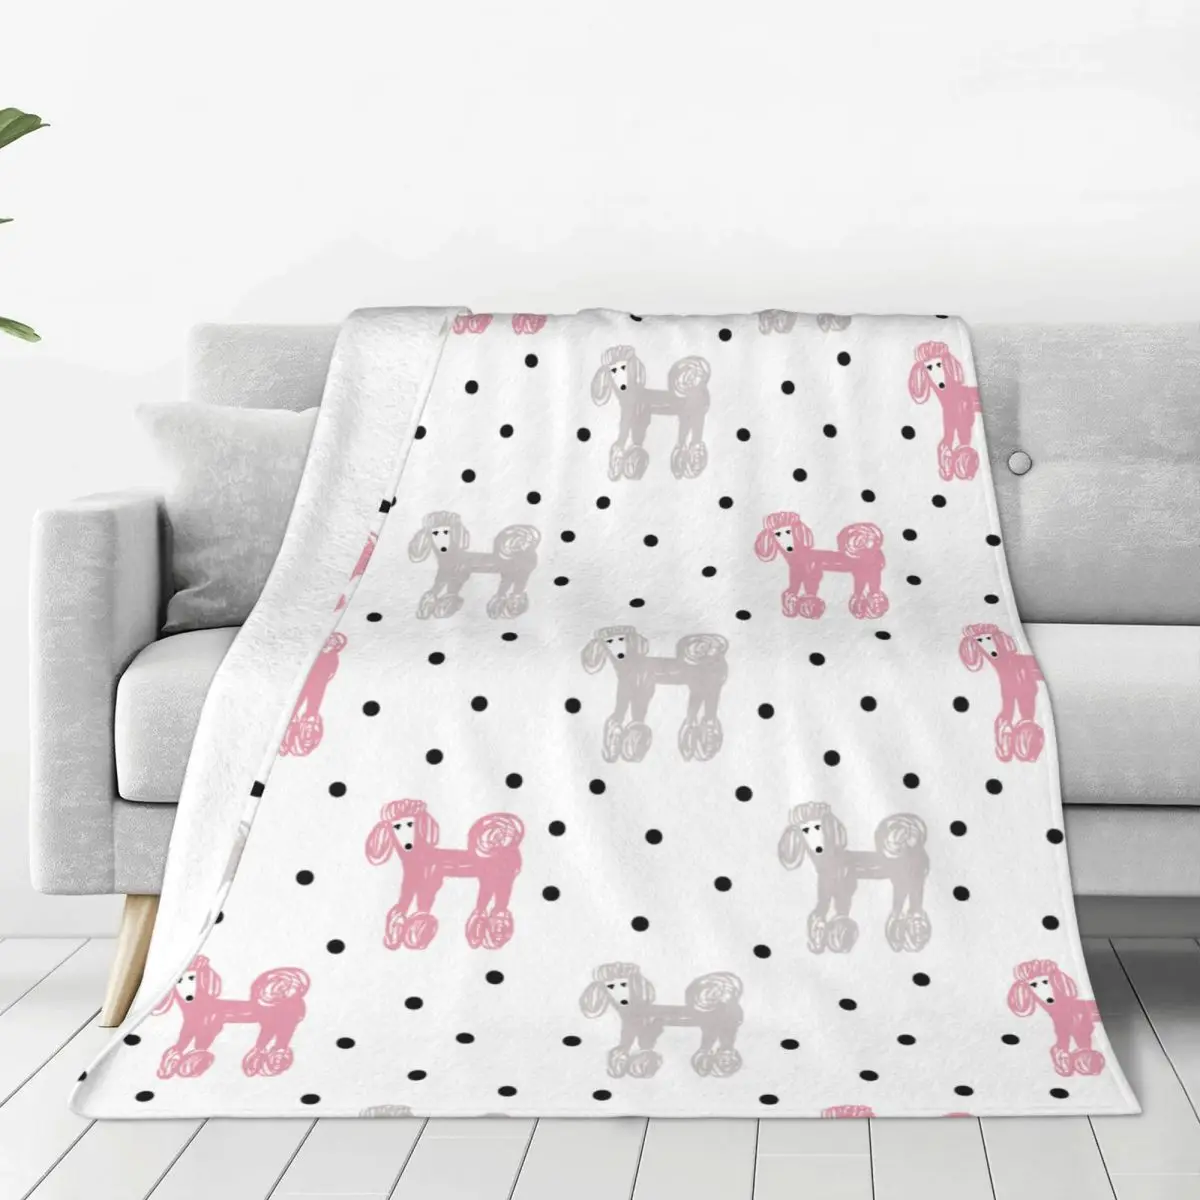 

Мультяшное романтическое милое Фланелевое всесезонное одеяло с изображением животных, собак, любителей, портативное теплое одеяло для кровати, офиса, постельные принадлежности